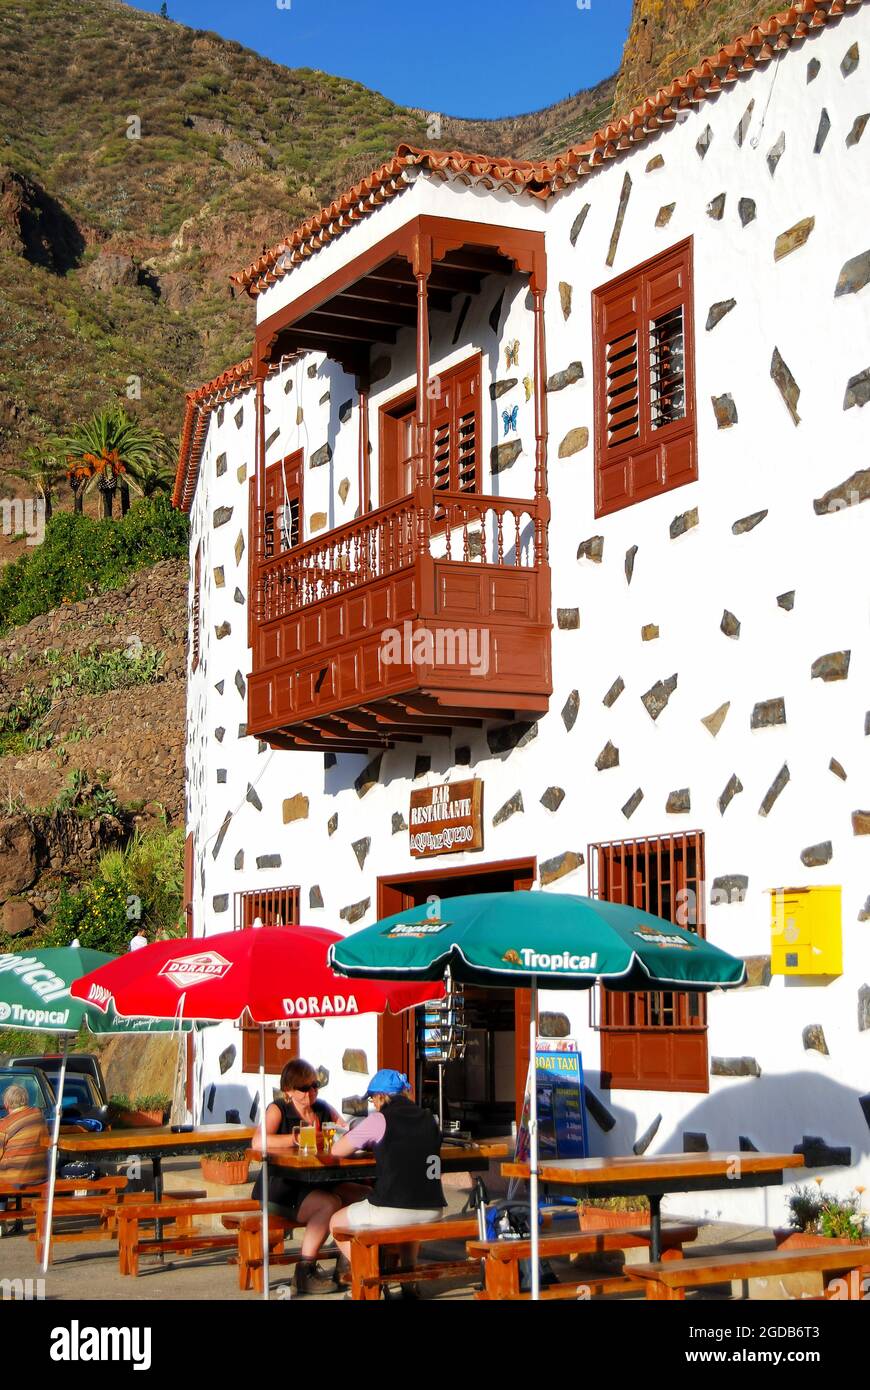 Mountain restaurant, Masca, The Teno, Tenerife, Canary Islands, Spain Stock Photo